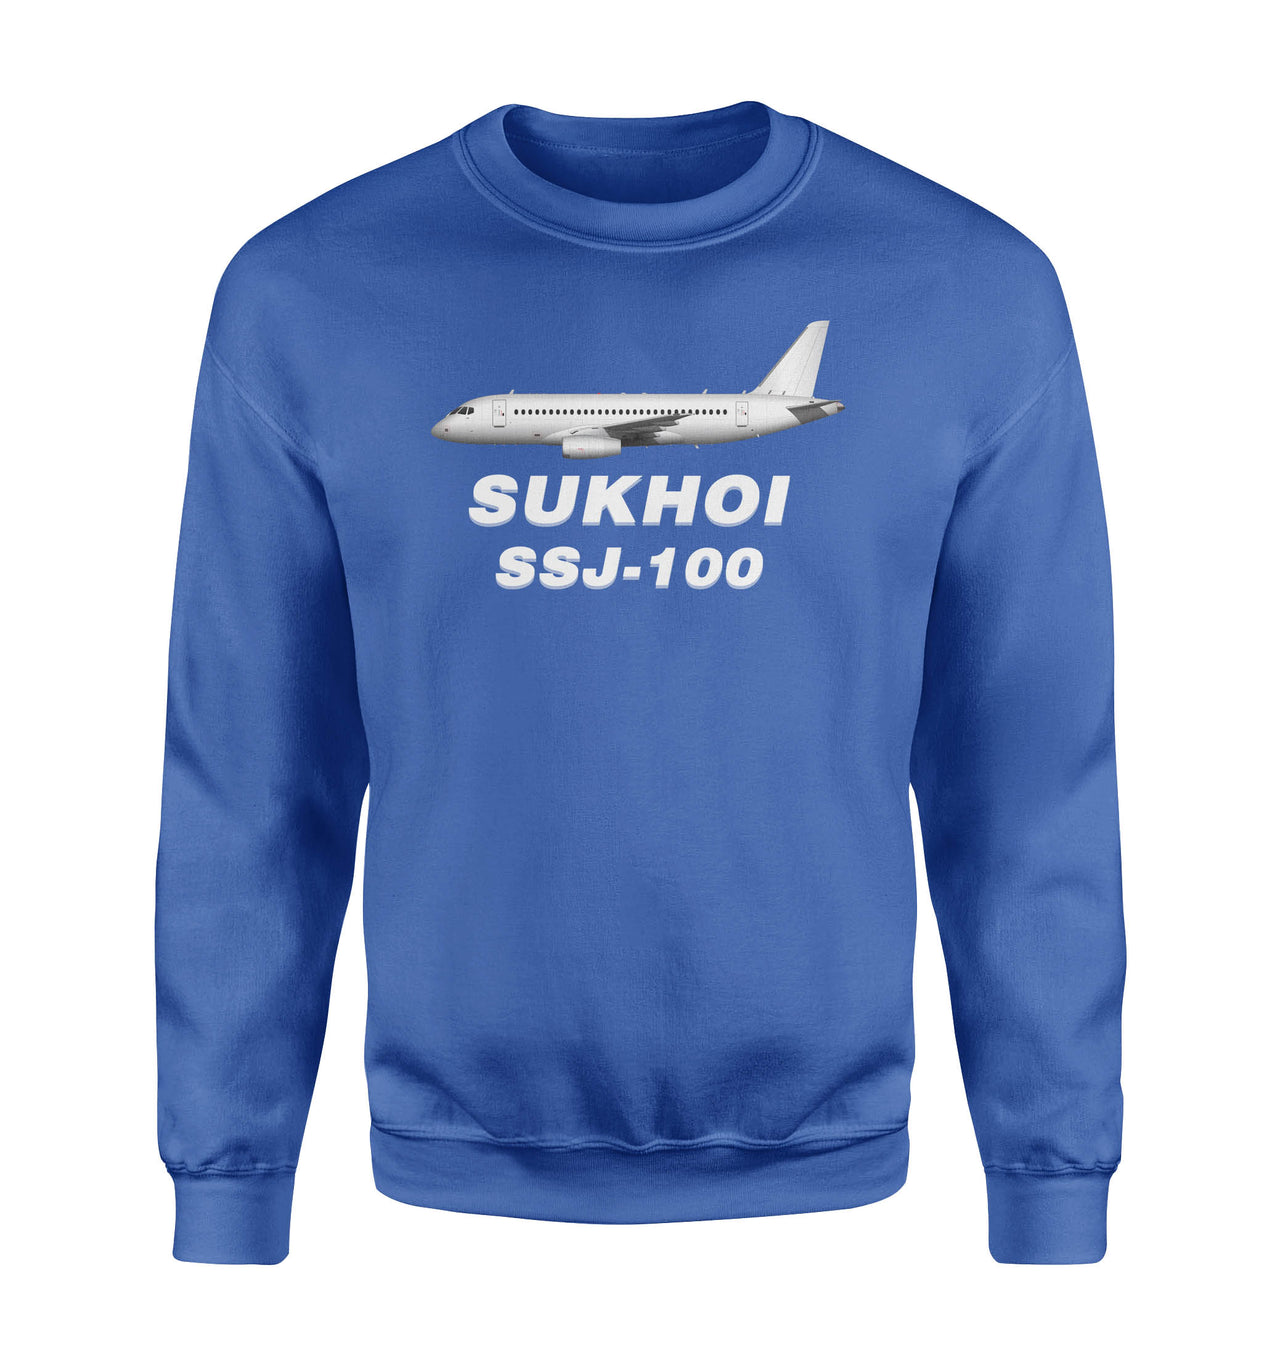 The Sukhoi Superjet 100 Designed Sweatshirts